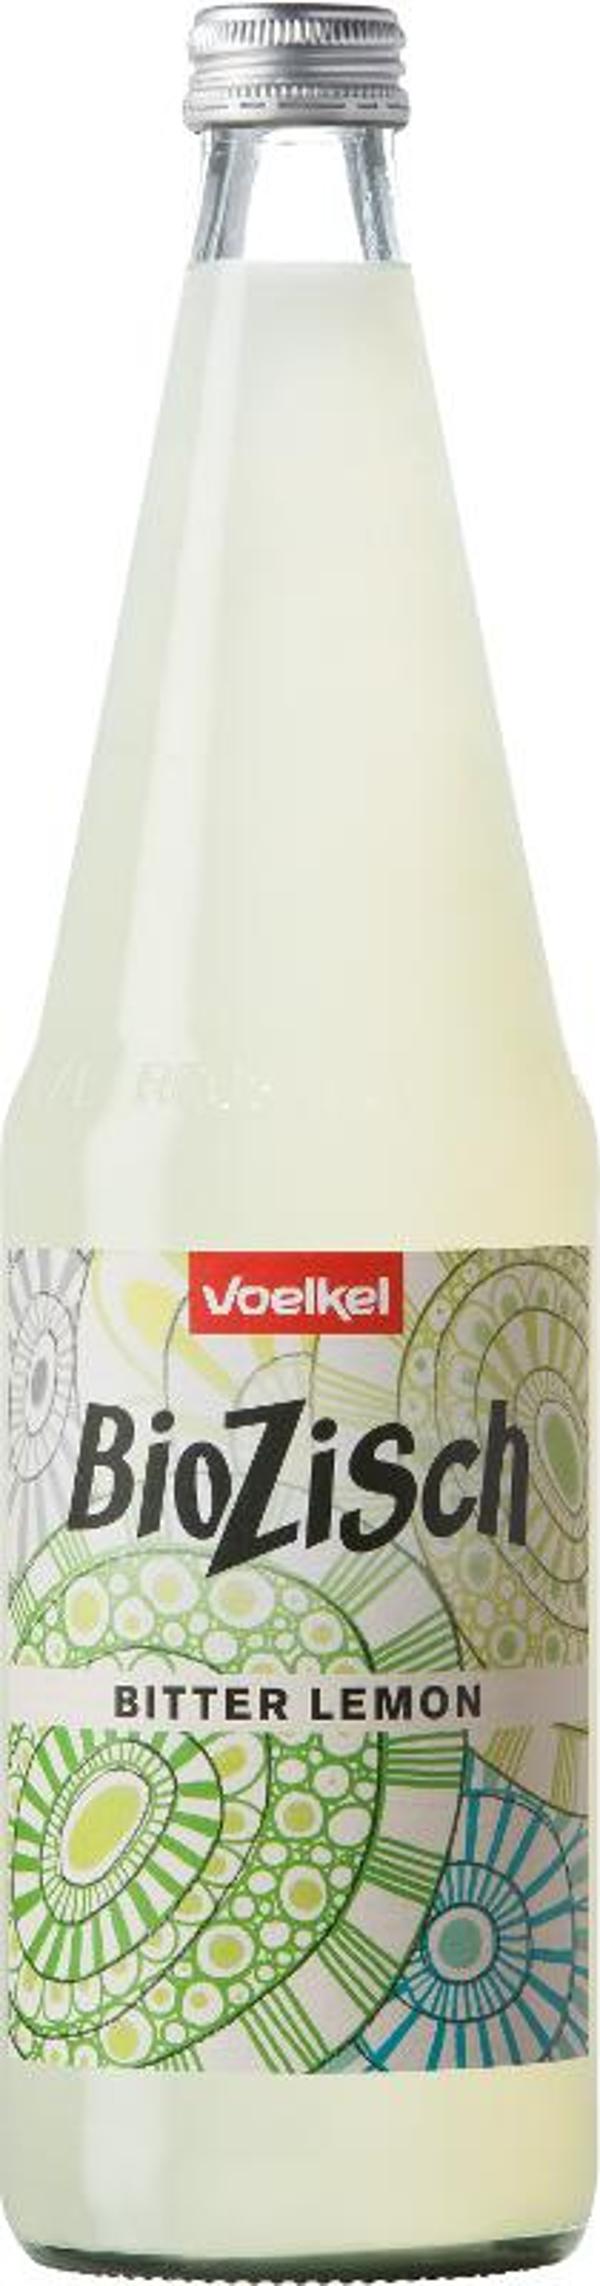 Produktfoto zu BioZisch Bitter Lemon 0,7l Fl